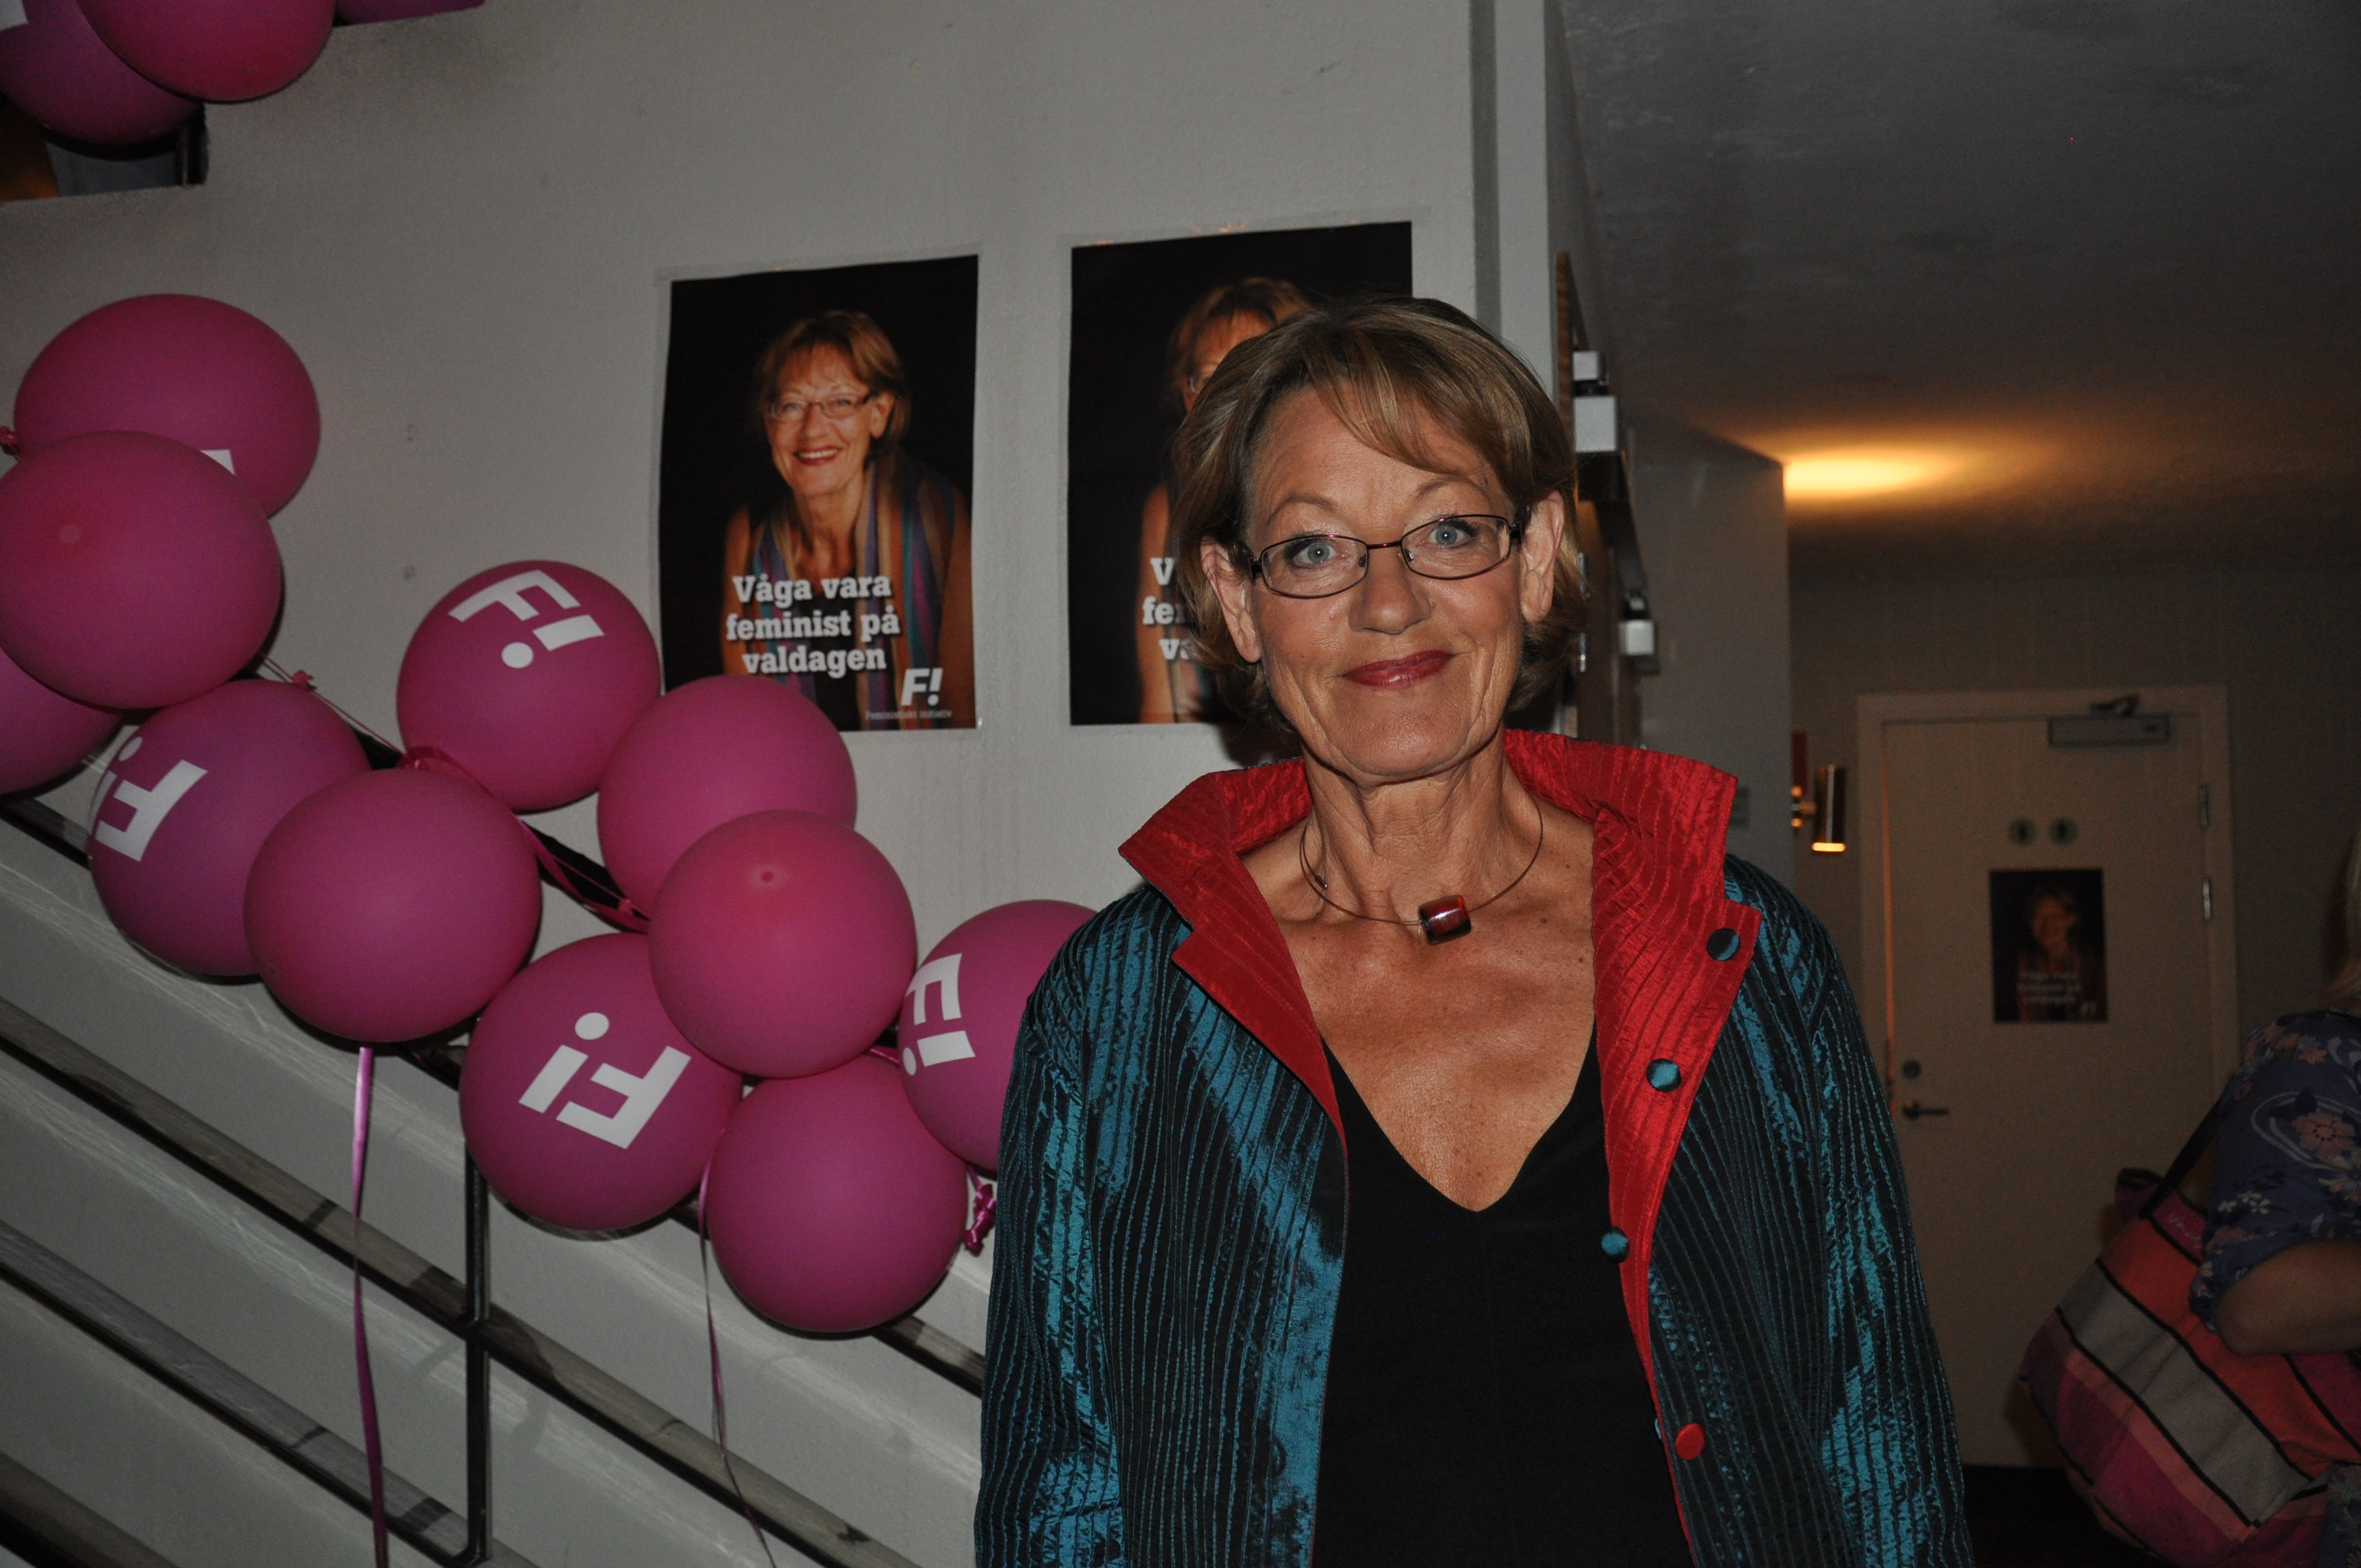 Gudrun Schyman, talesperson för feministiskt initiativ poserar med sig själv i bakgrunden.